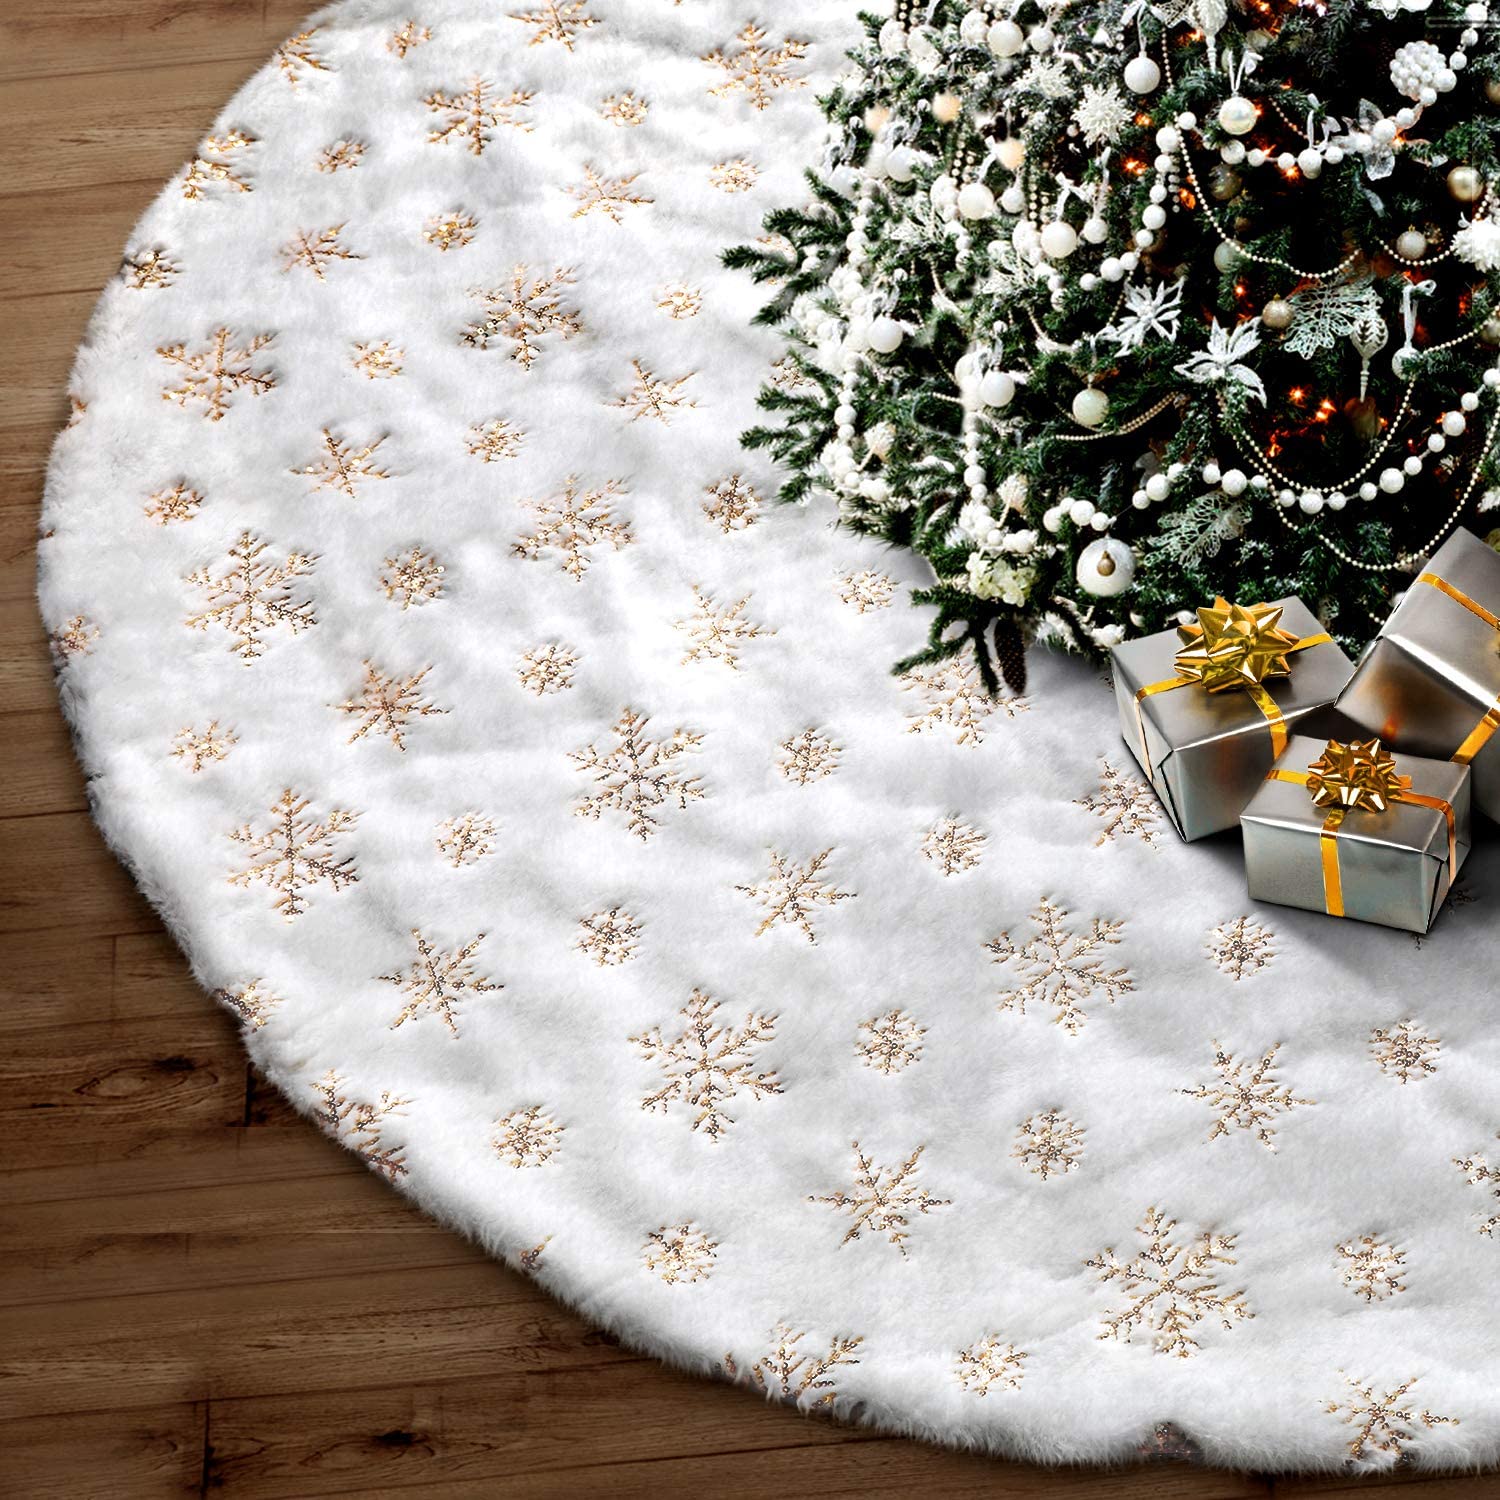 Soqool White Faux Fur Christmas Tree Skirt, 48-Inch